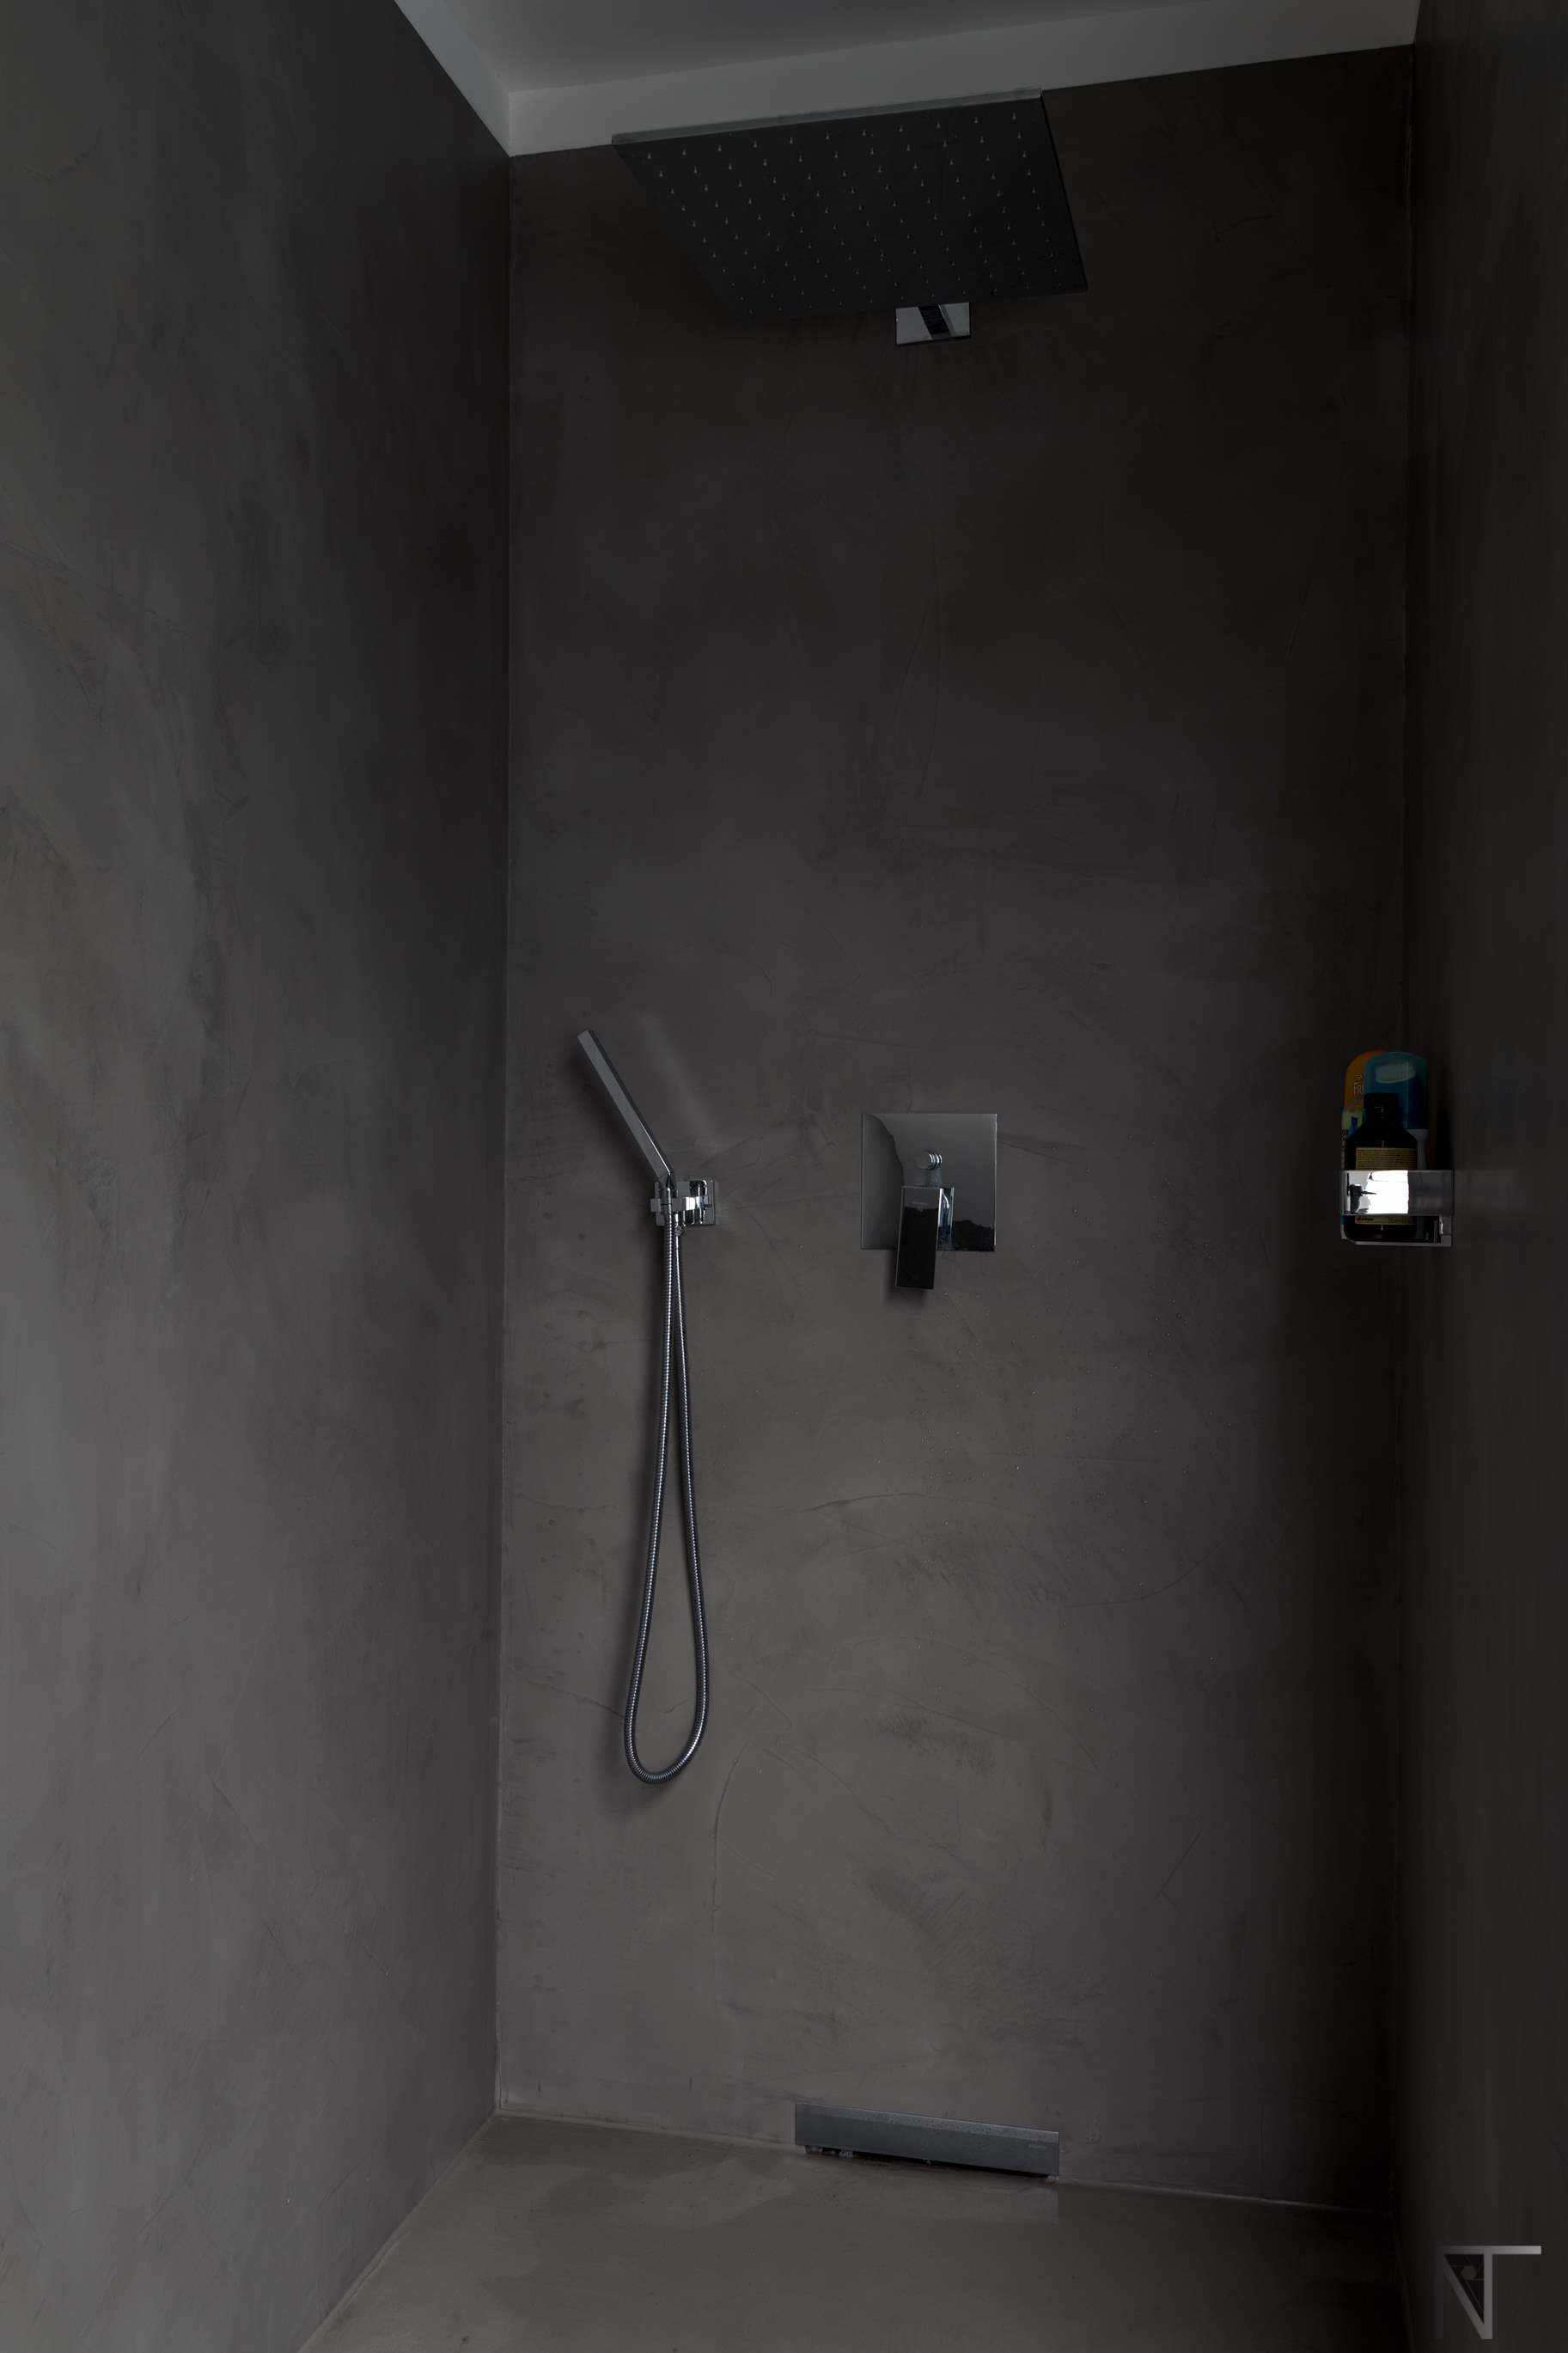 Salle de bain carrelée rénovée avec microciment dans la douche